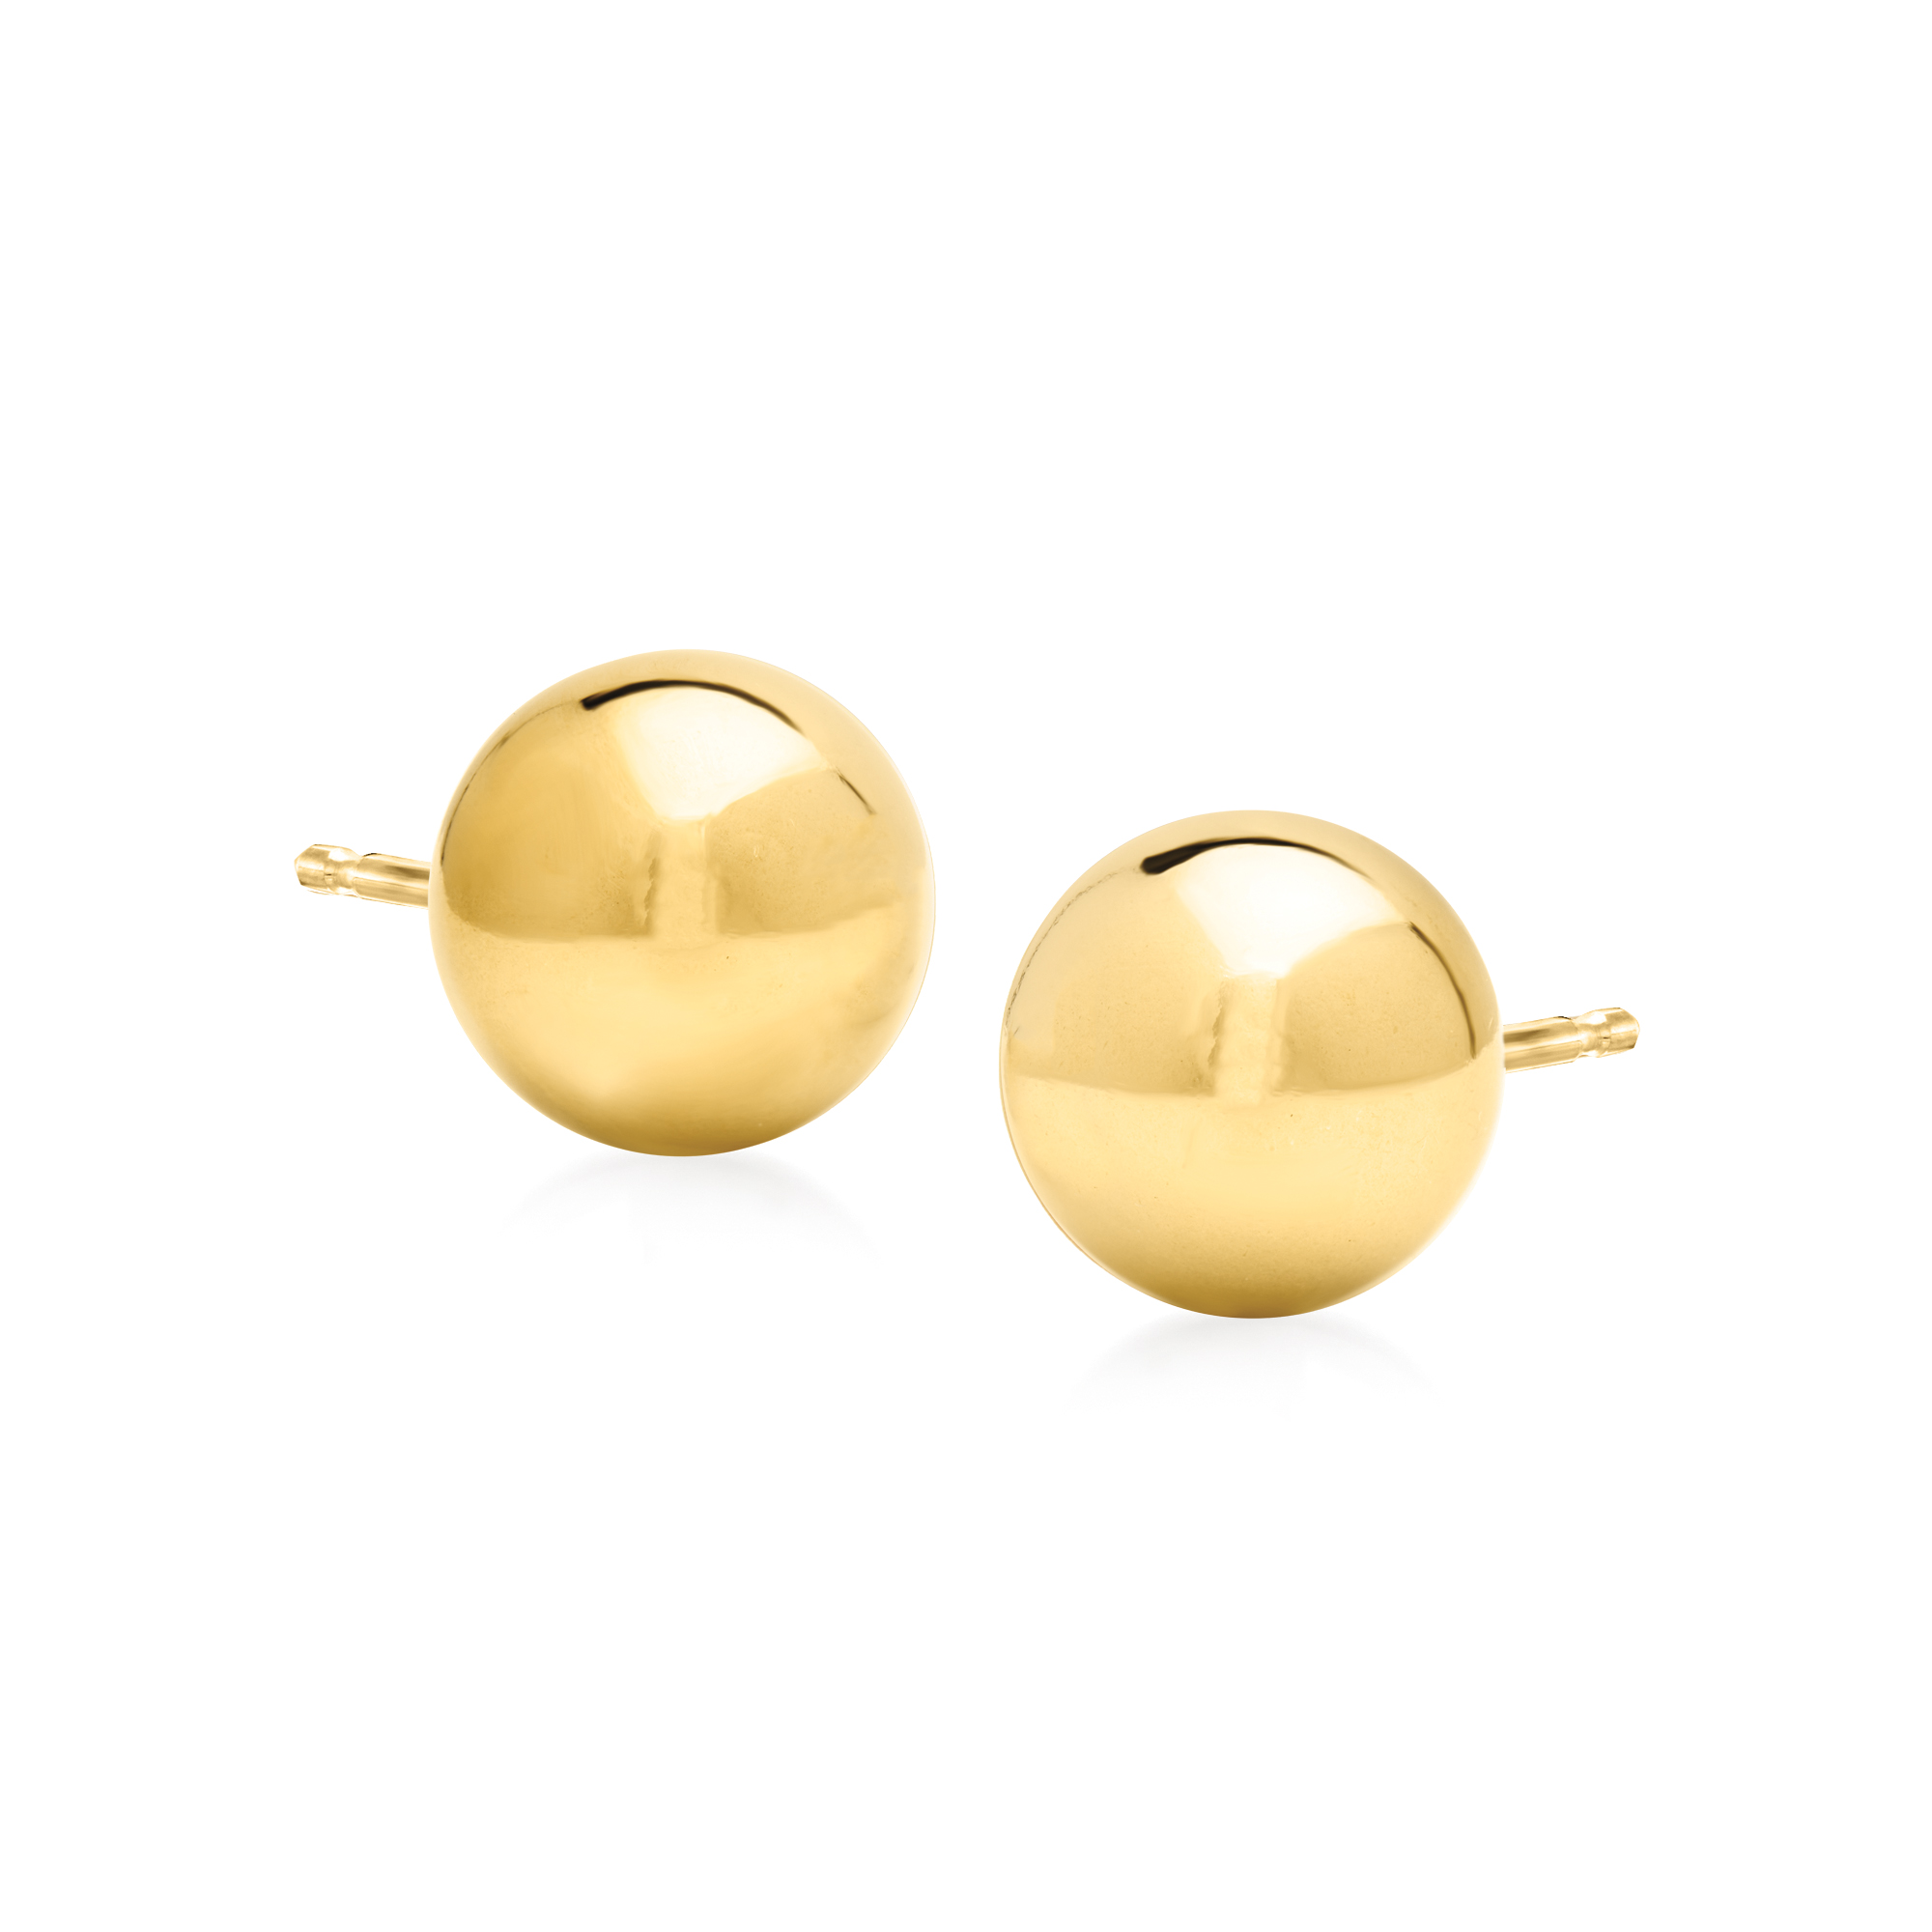 10mm 14kt Yellow Gold Ball Stud Earrings | Ross-Simons